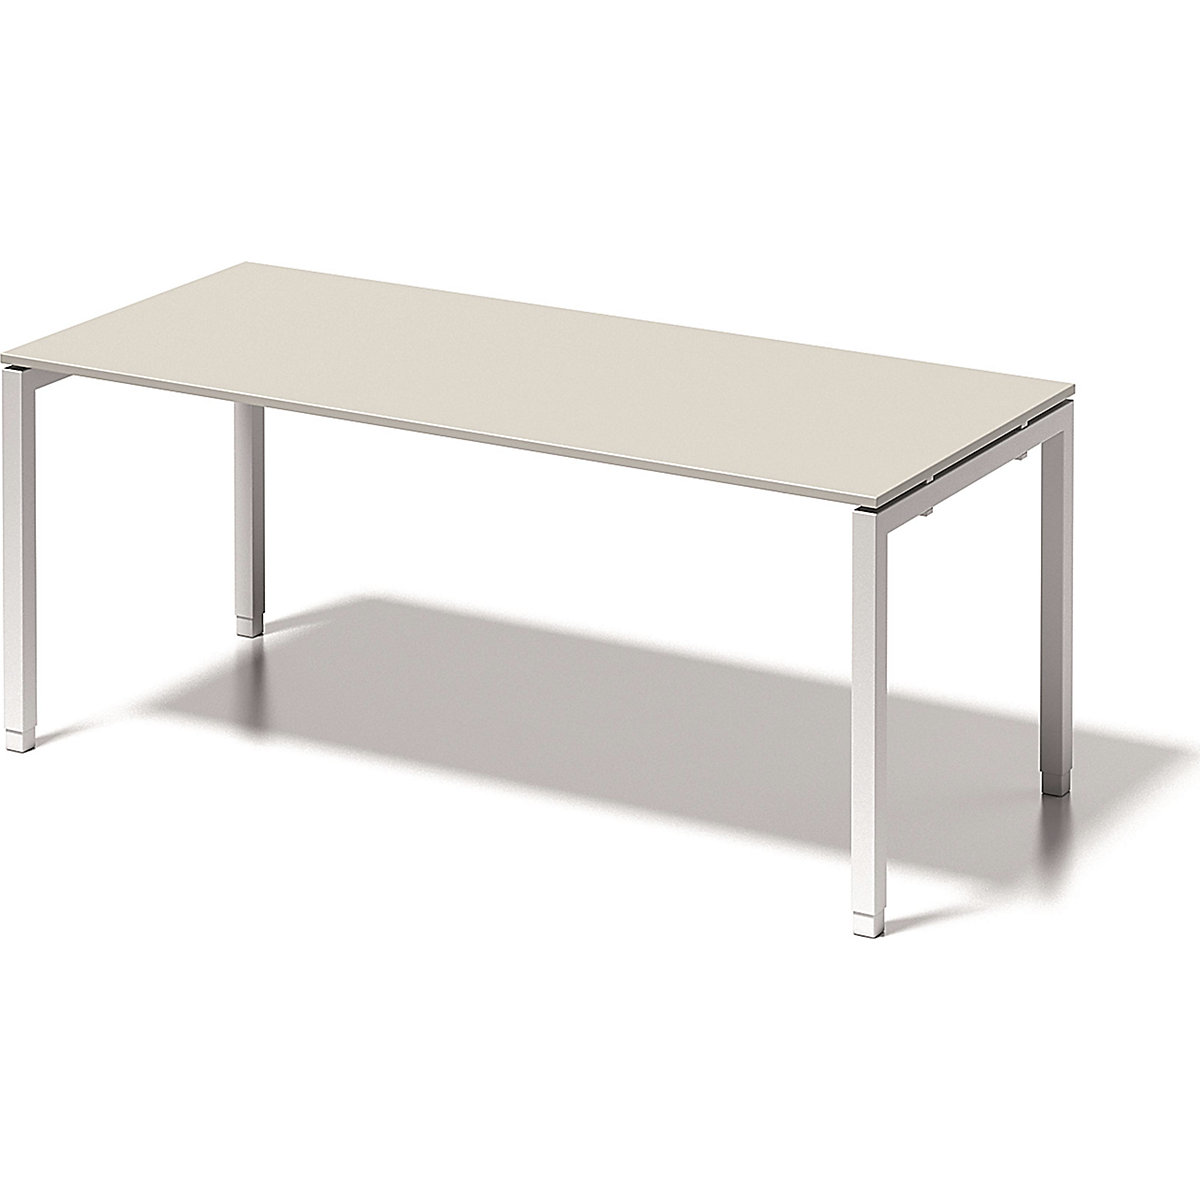 Písací stôl CITO, podstavec v tvare U – BISLEY, v x š x h 650– 850 x 1800 x 800 mm, podstavec biela, doska stola šedobiela-3